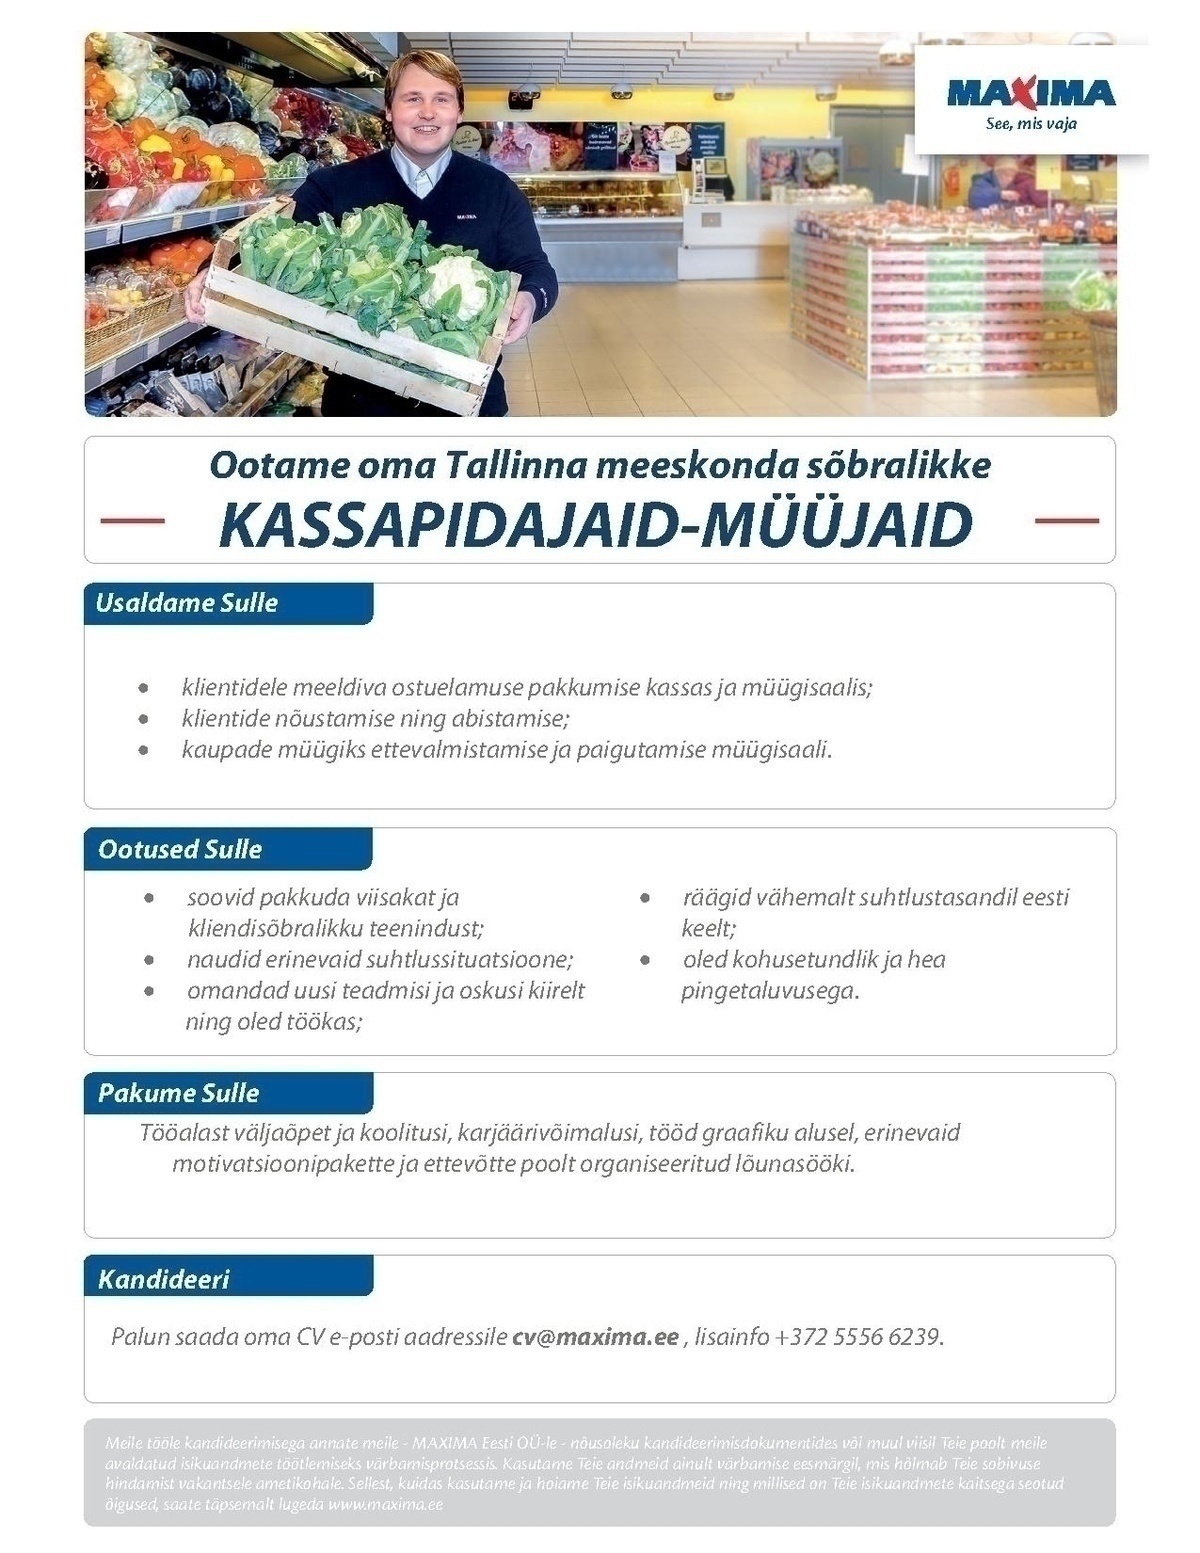 Maxima Eesti OÜ Kassapidaja-müüja Viimsi Maximasse 